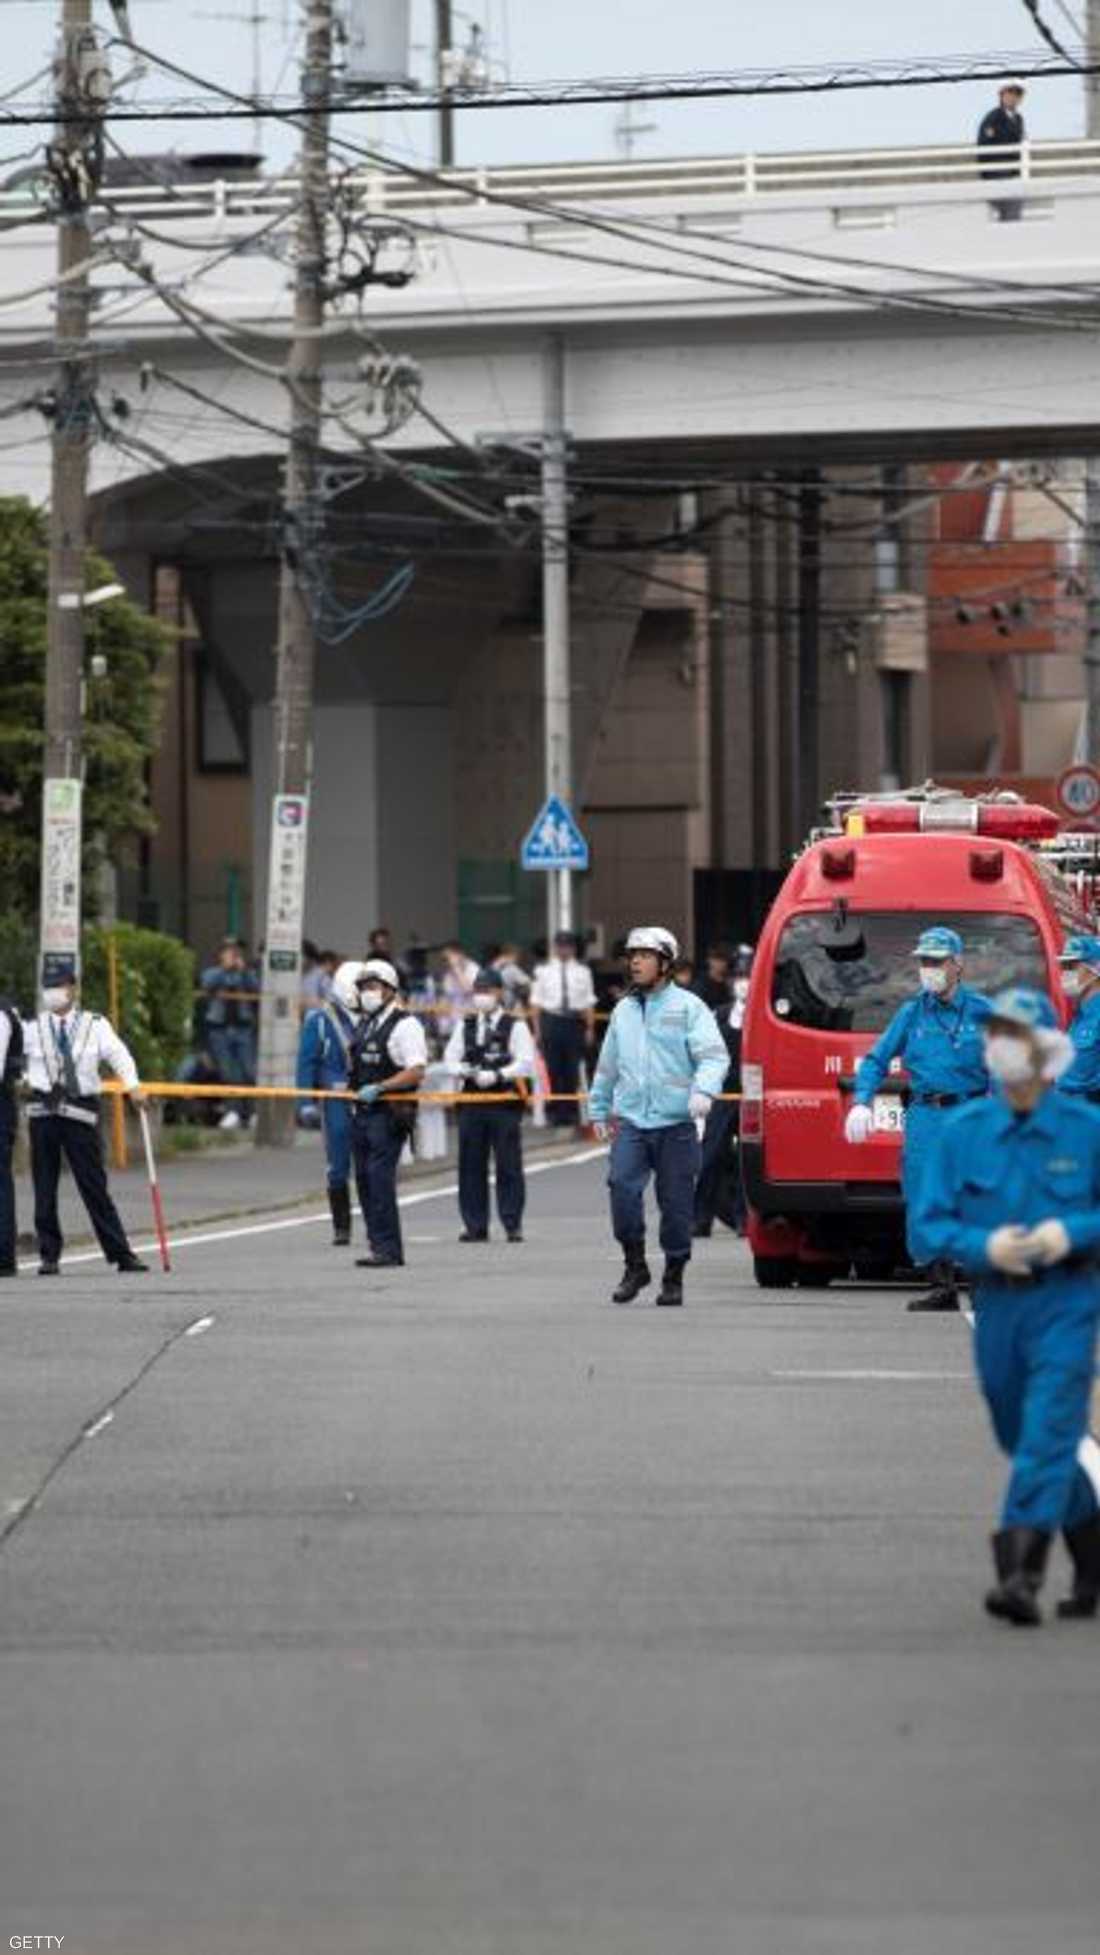 هاجم رجل كان يحمل سكينا تلميذات كن ينتظرن في محطة للحافلات خارج طوكيو، الثلاثاء، مما أسفر عن مقتل وإصابة أشخاص.